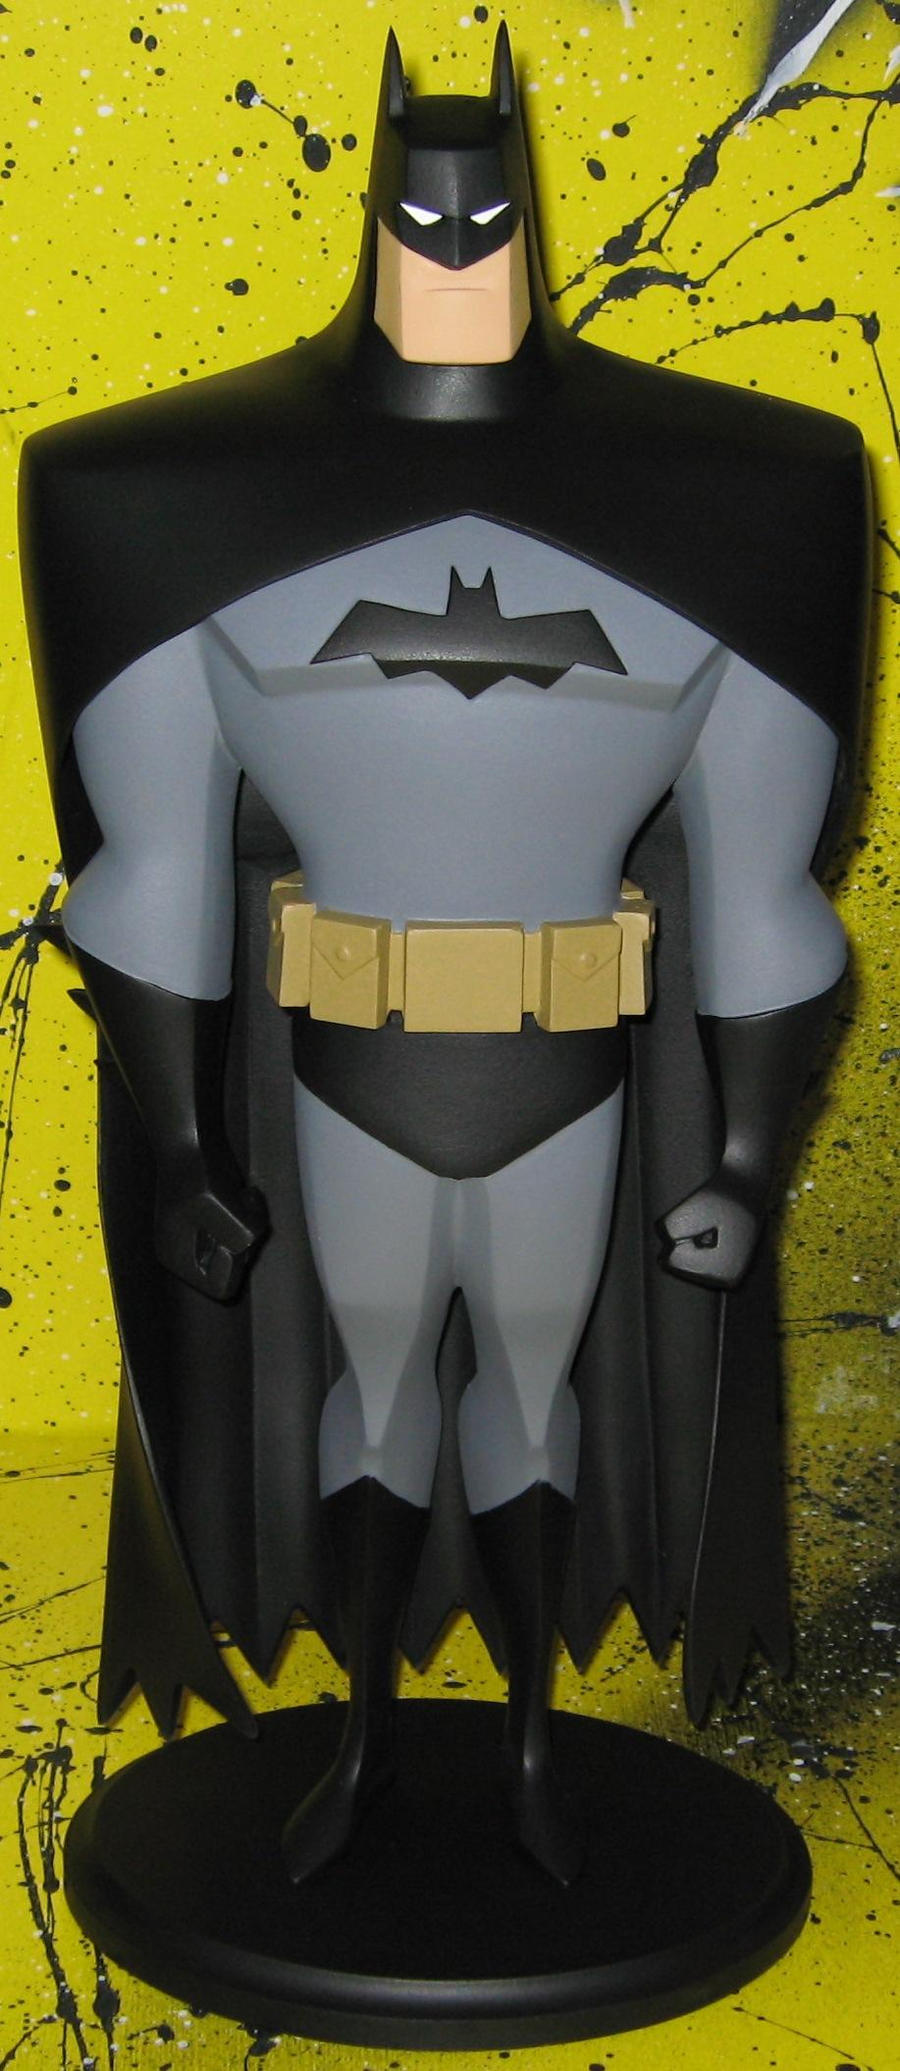 Batman sculpture